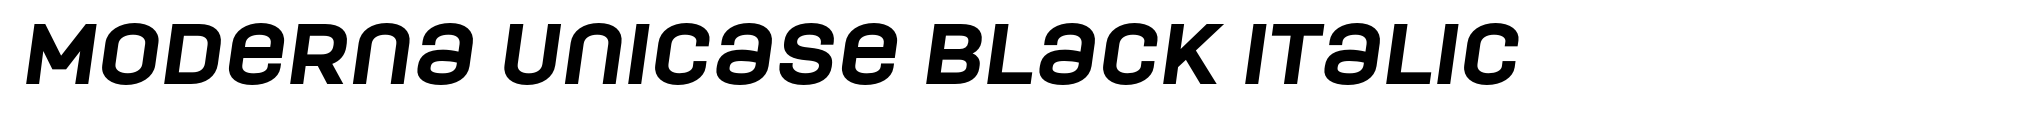 Moderna Unicase Black Italic image